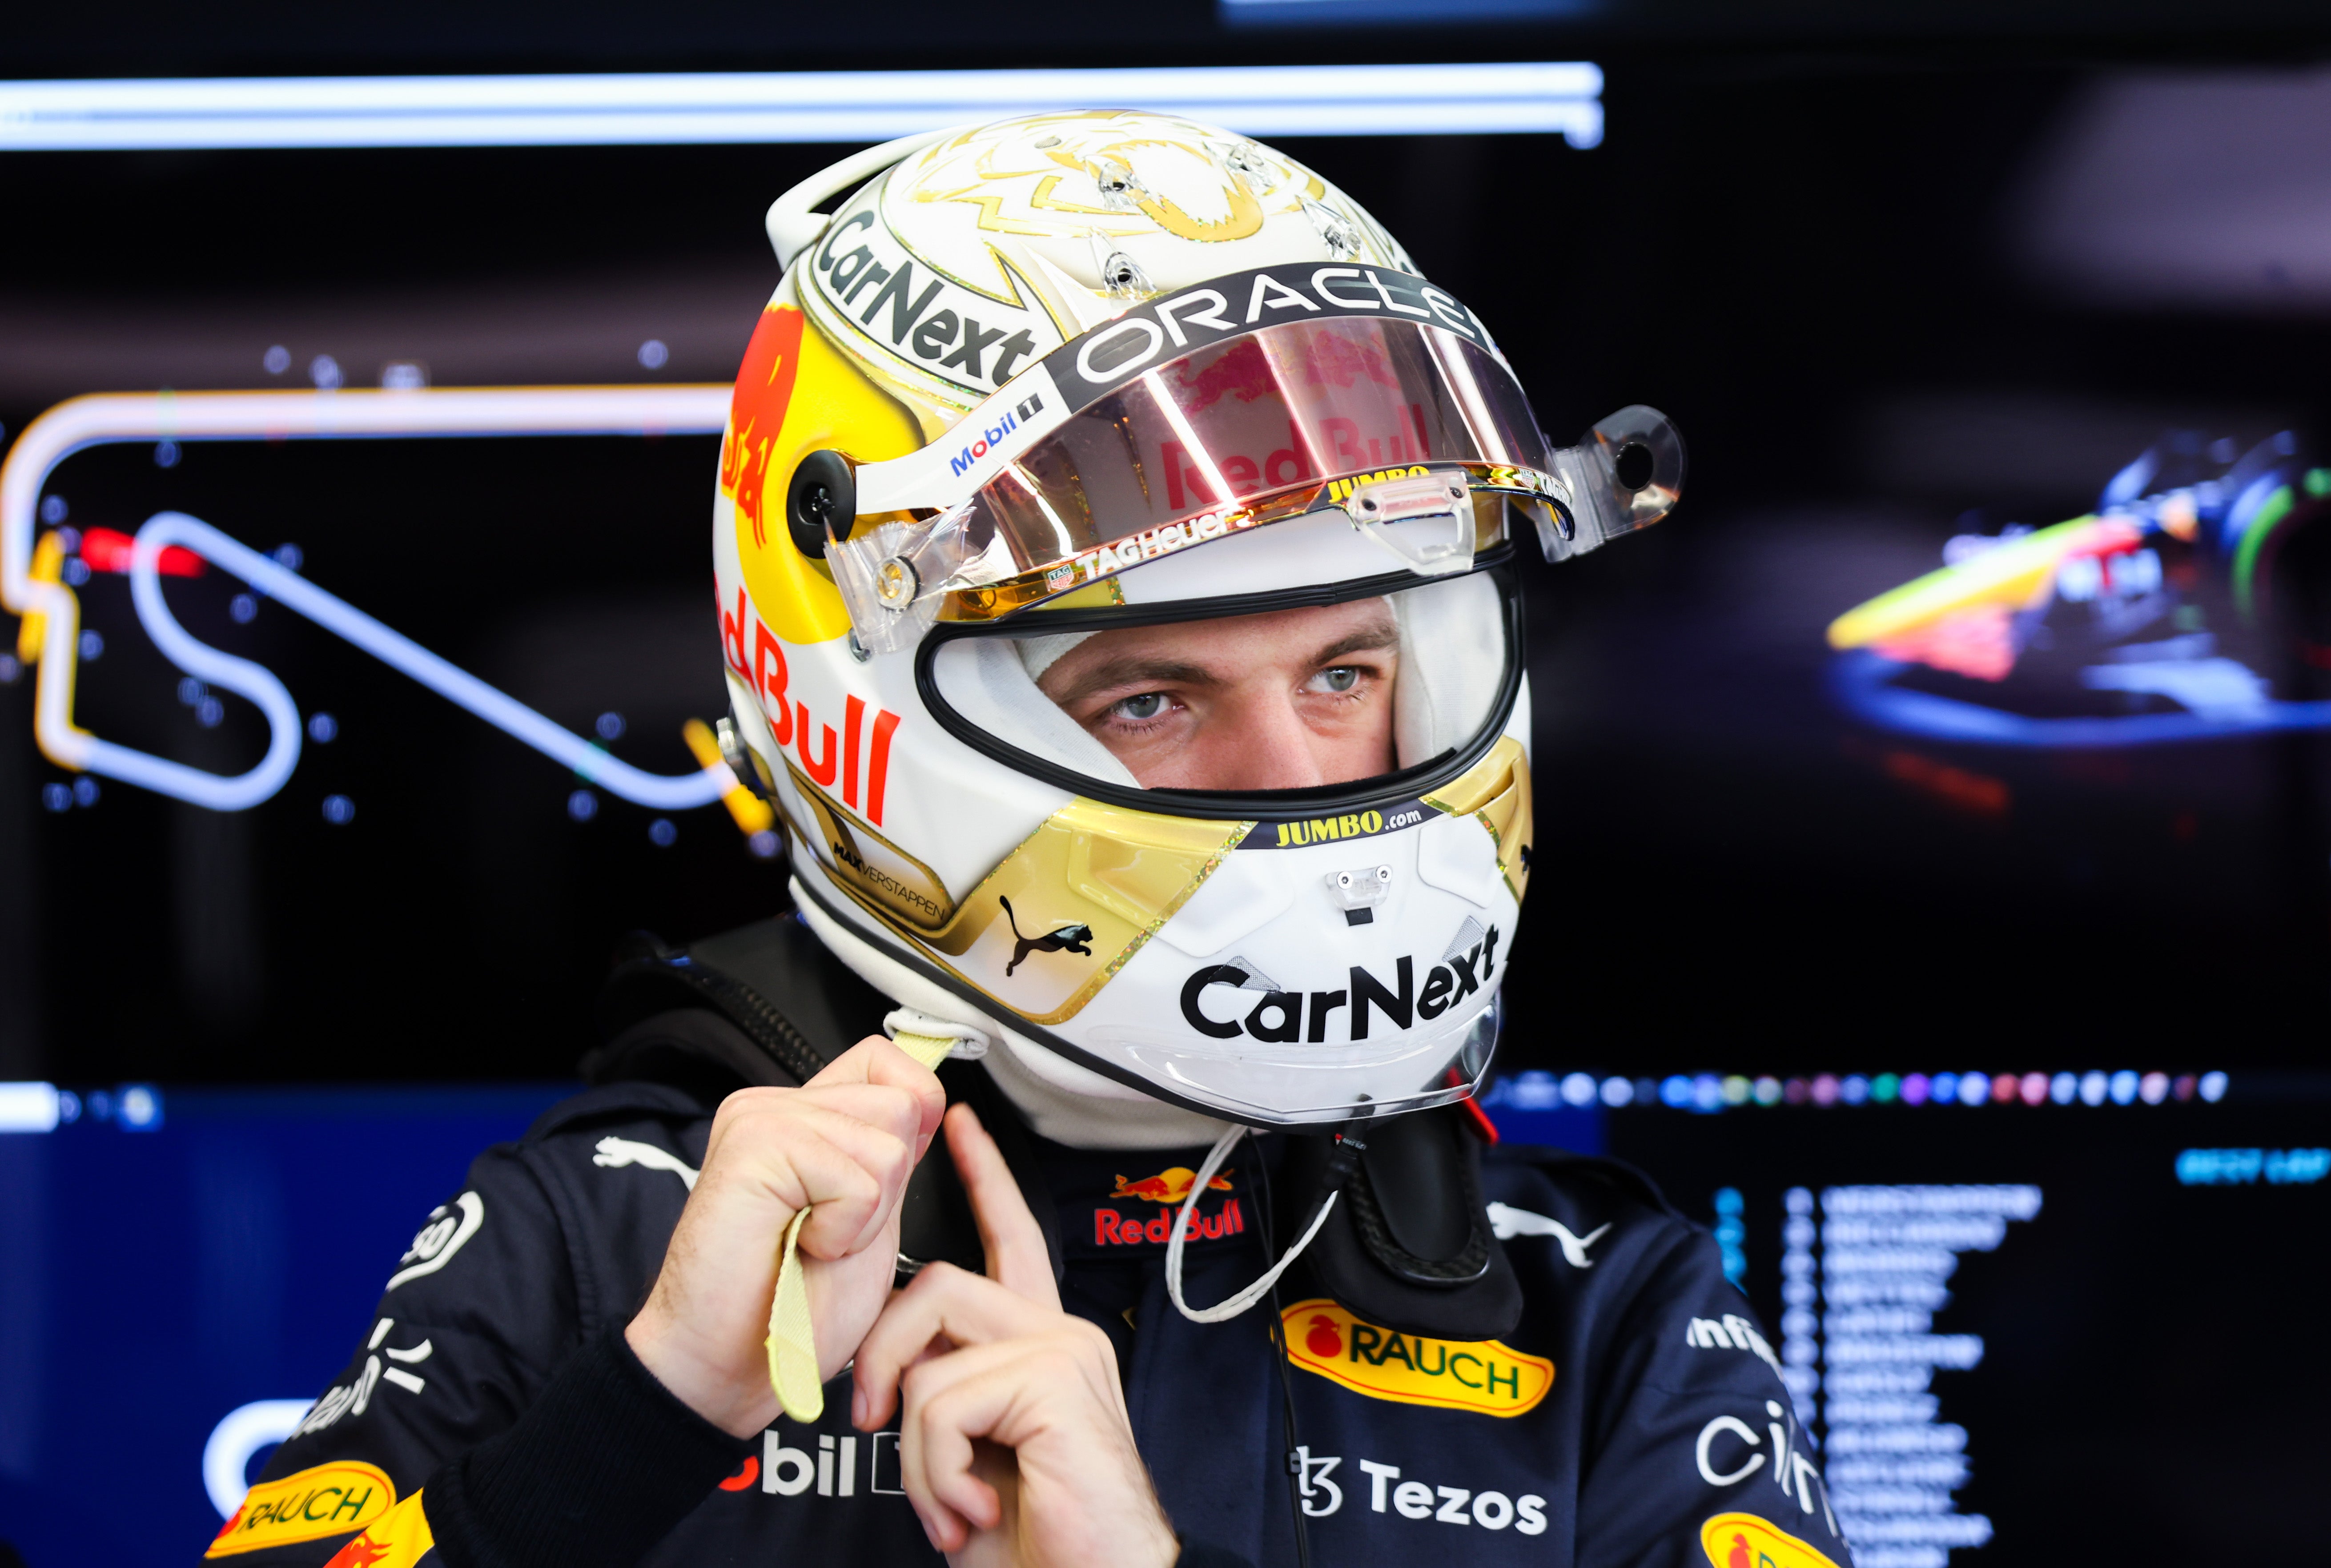 Verstappen won his maiden F1 title in 2021